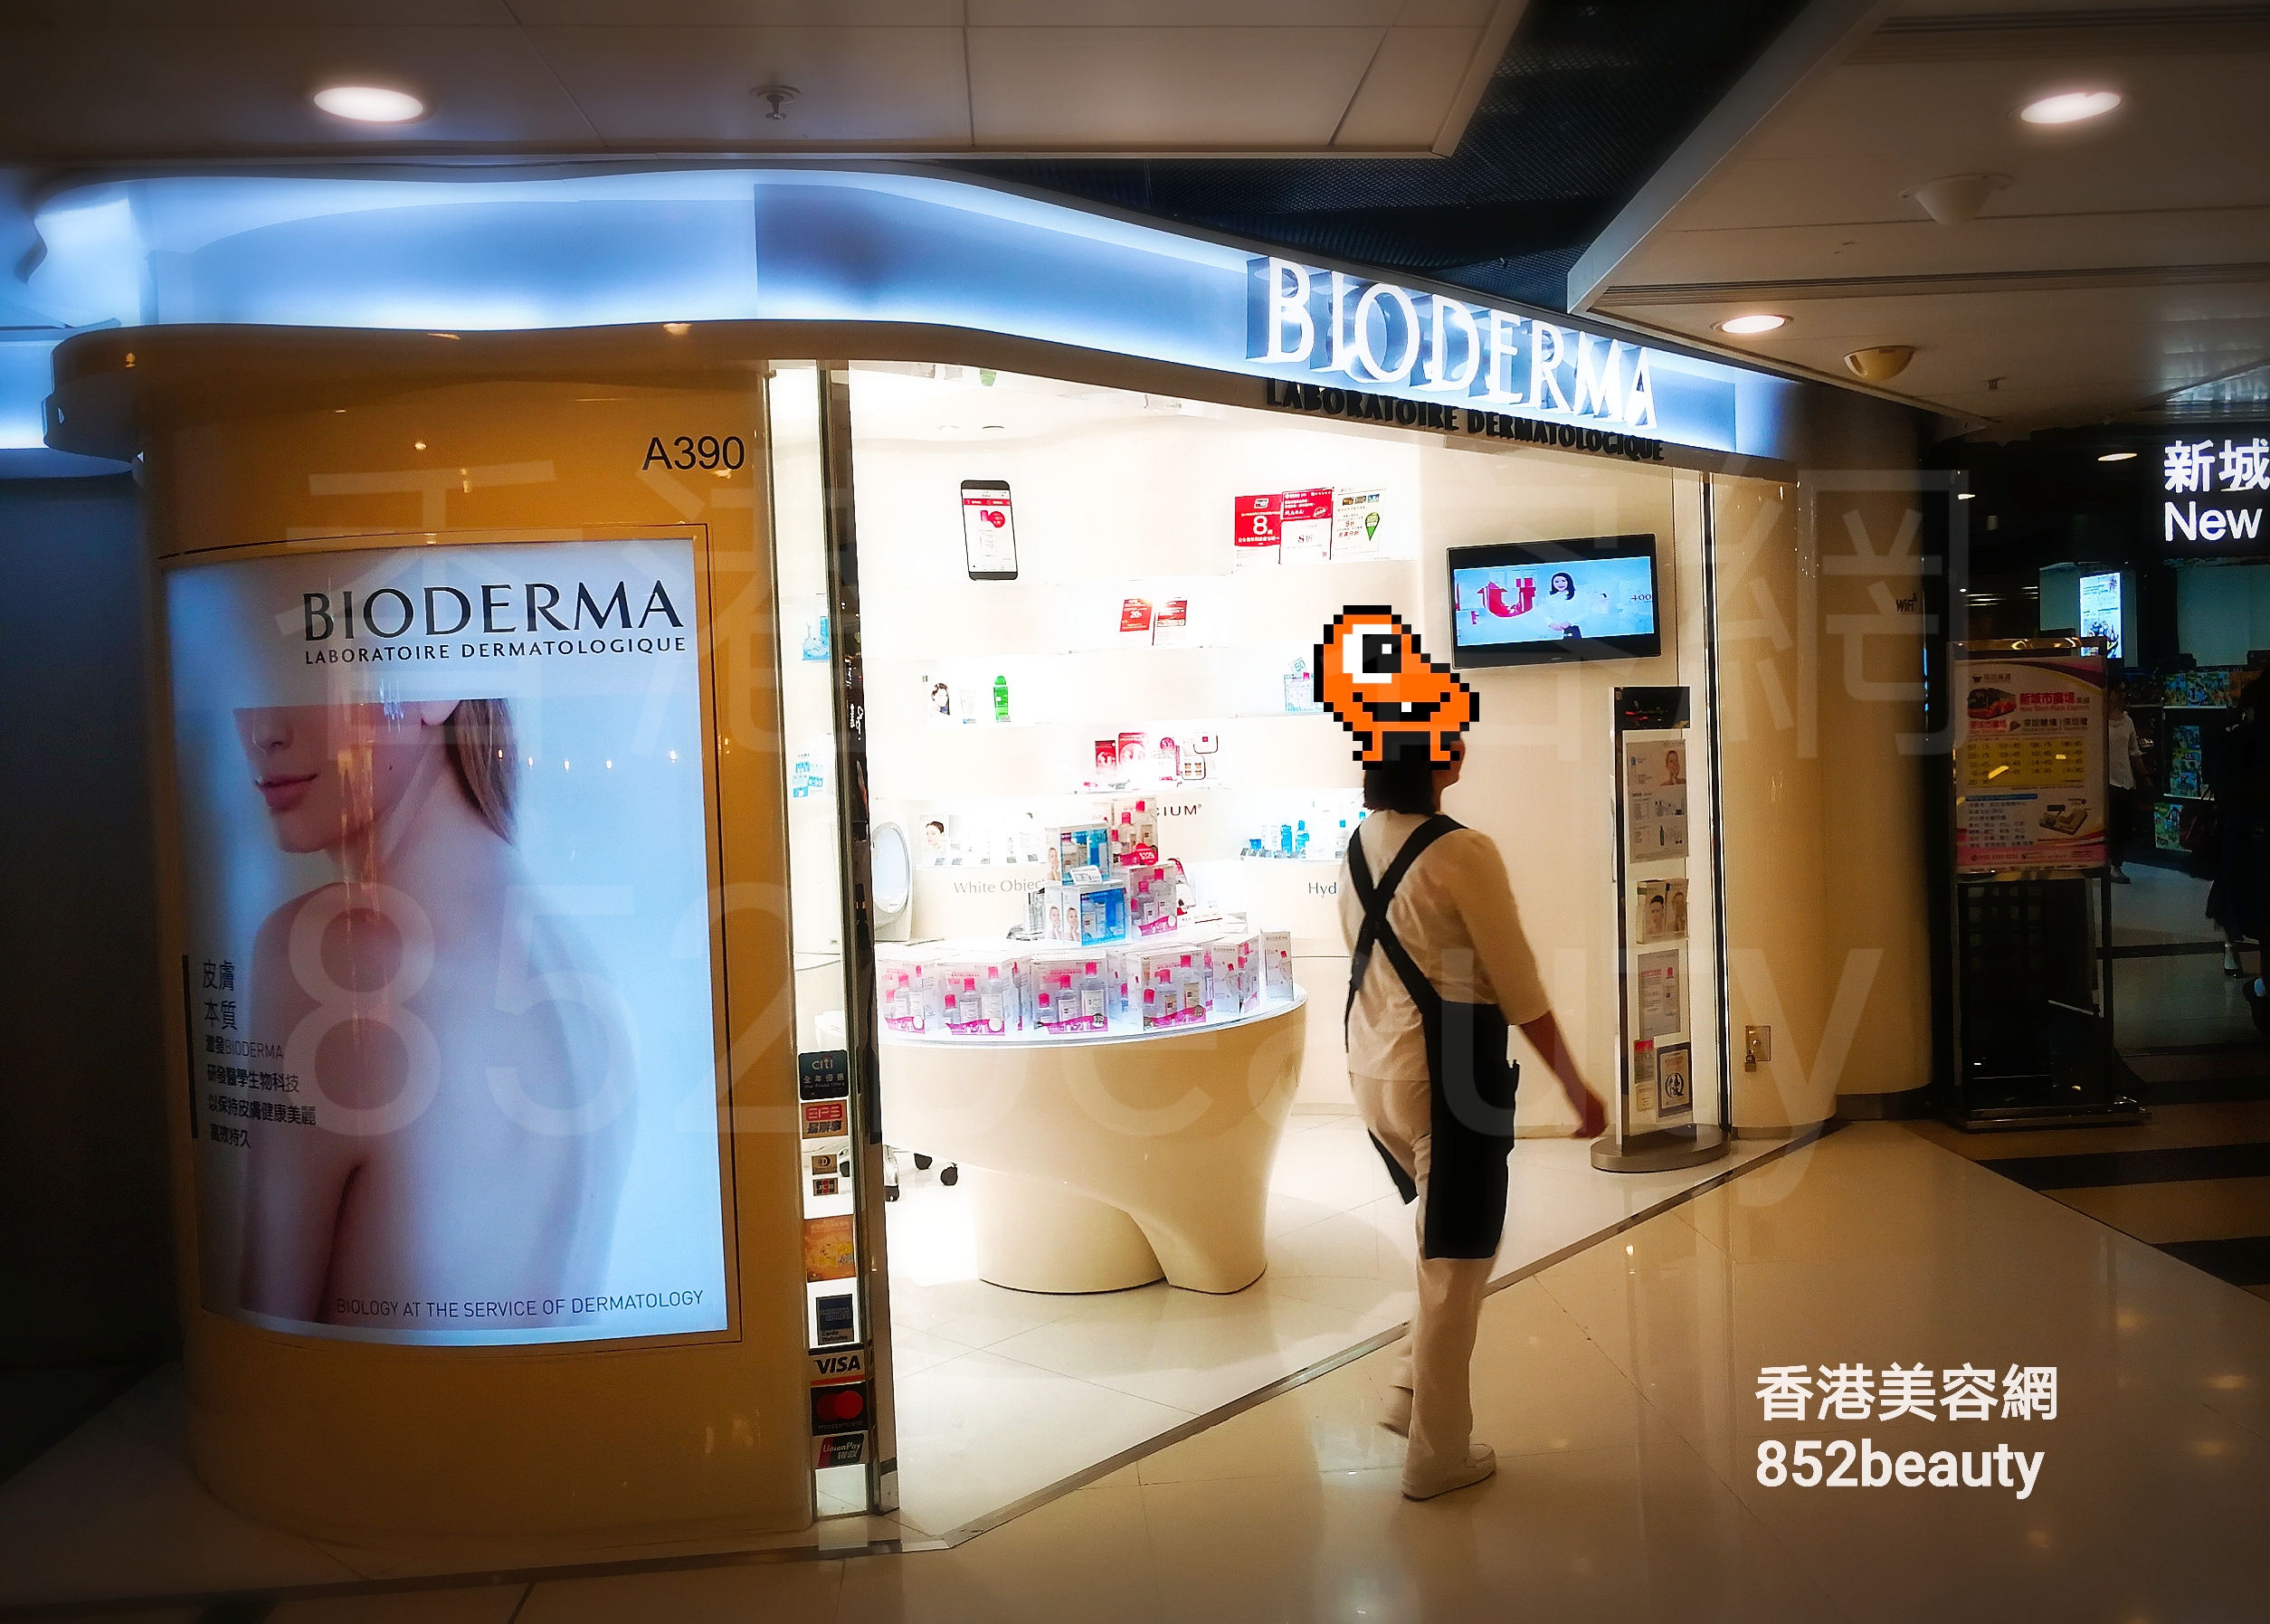 香港美容網 Hong Kong Beauty Salon 美容院 / 美容師: BIODERMA (沙田店)